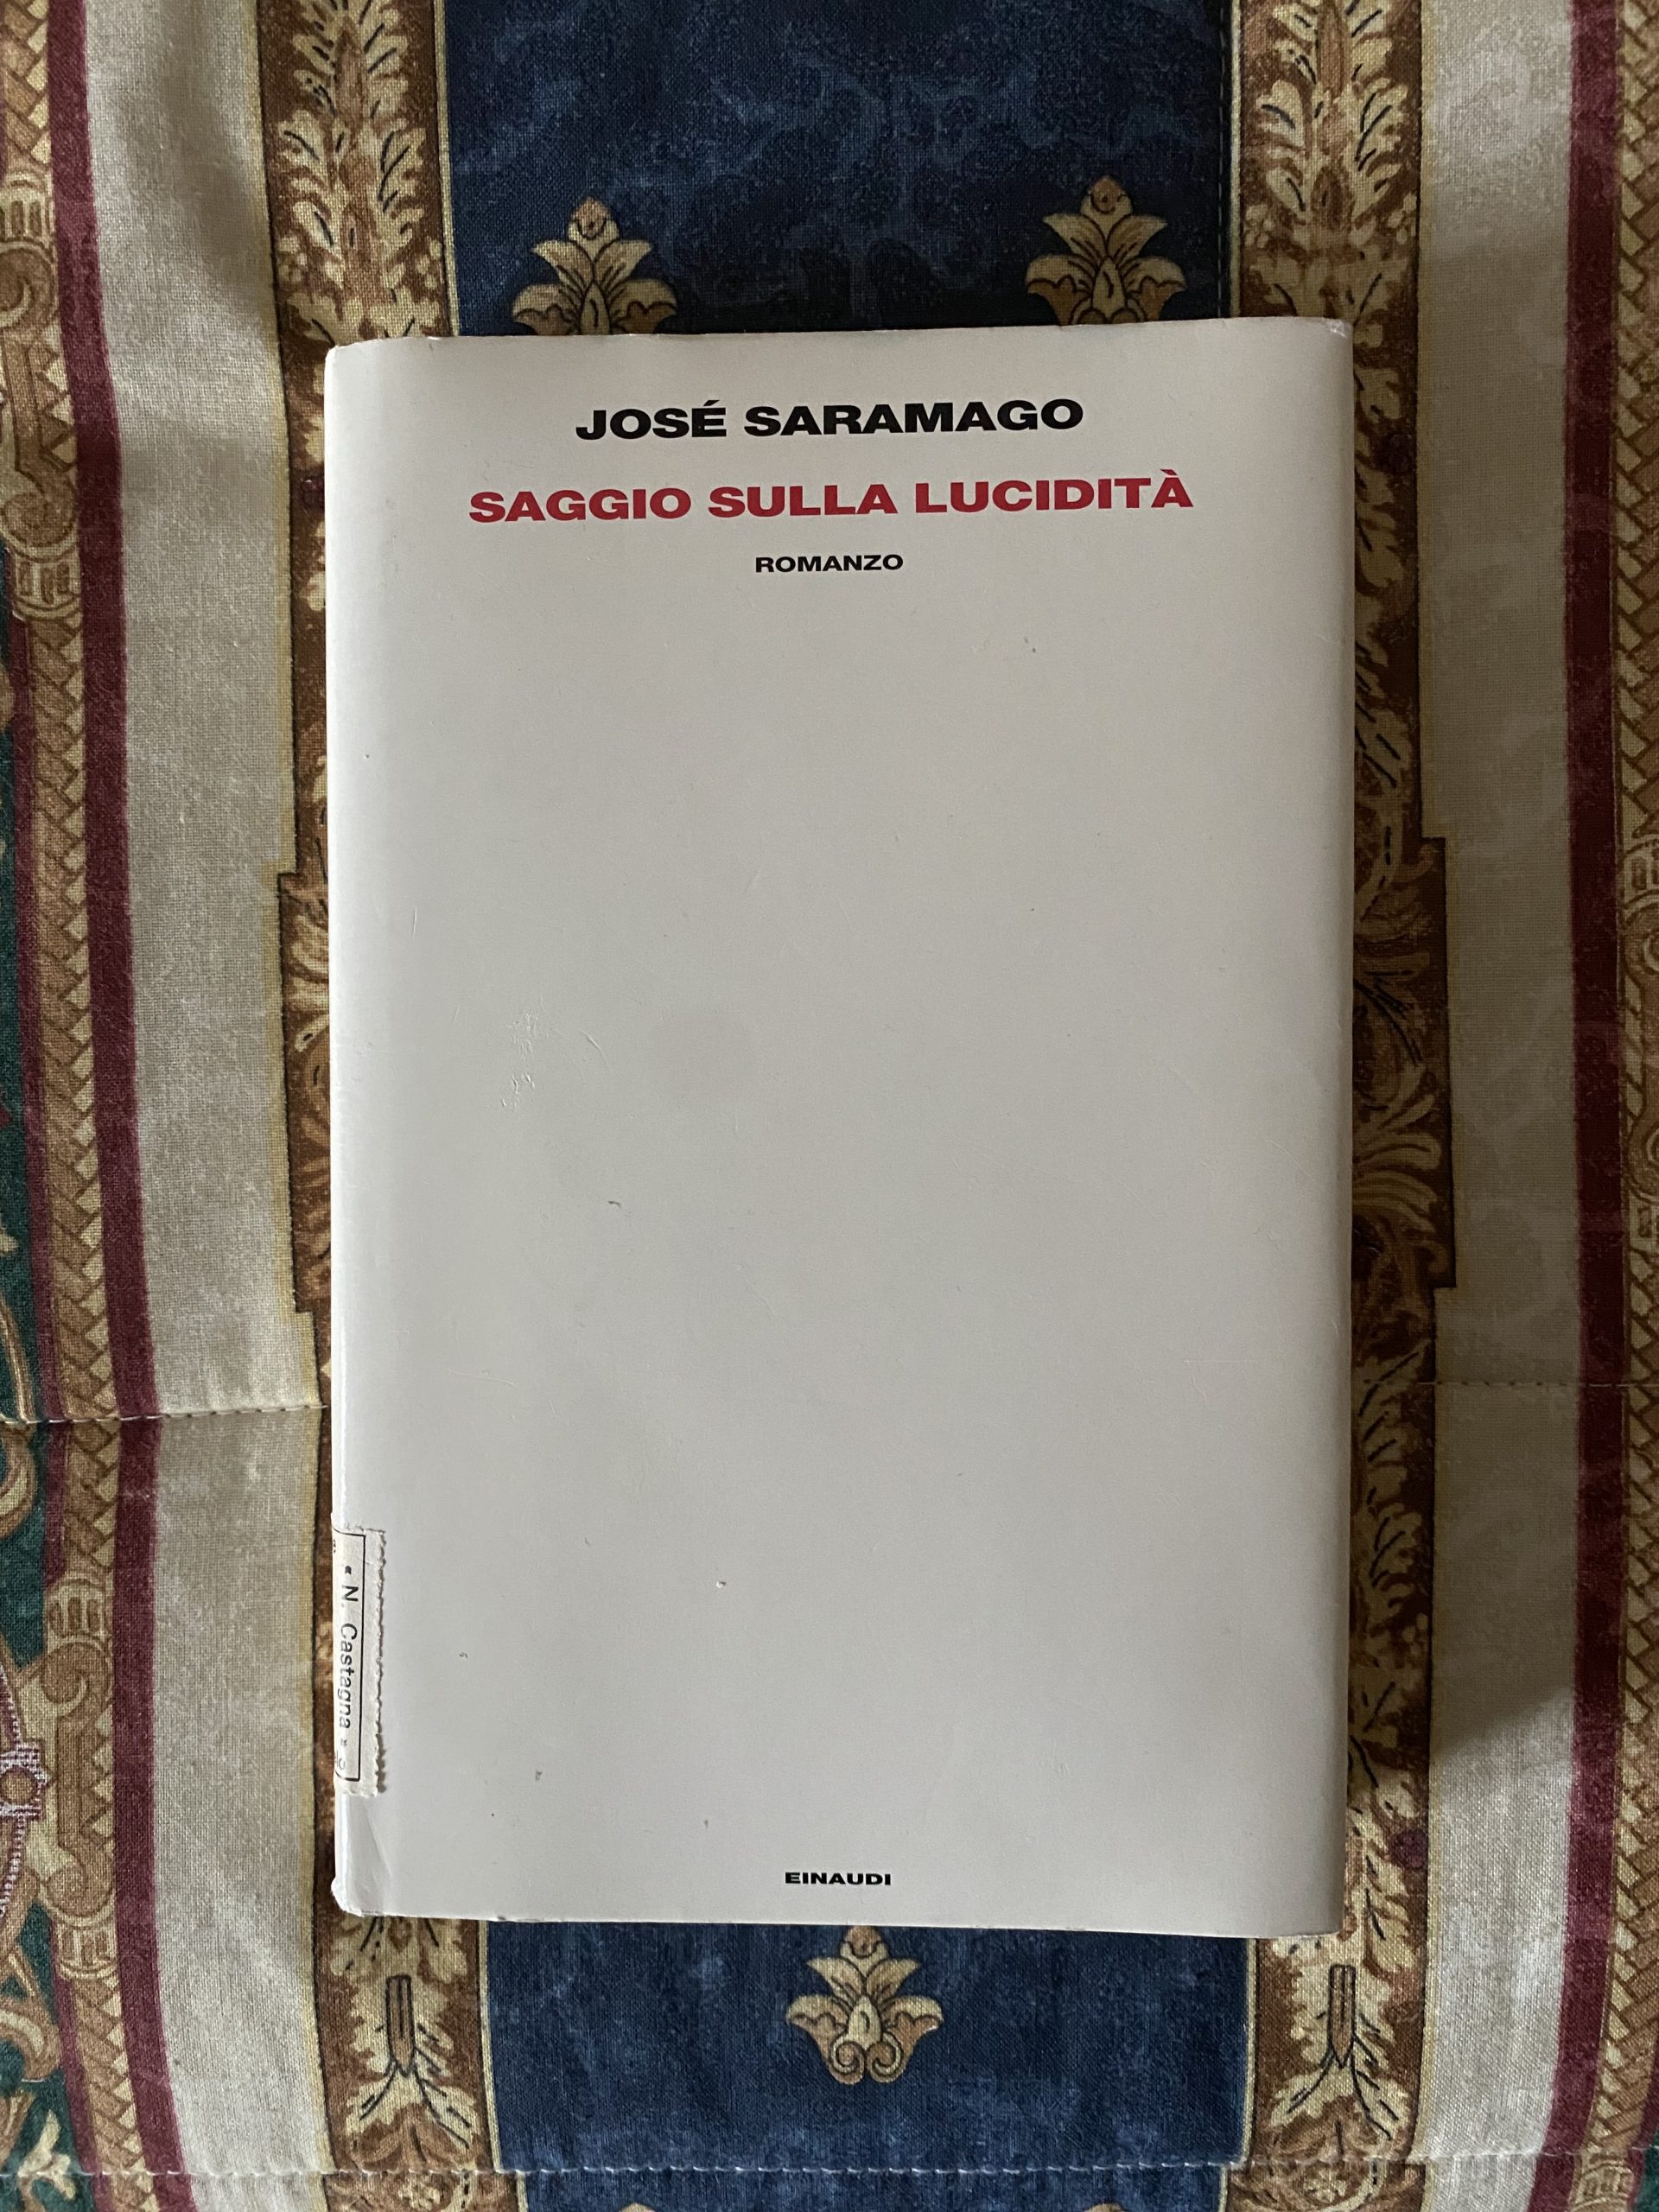 “Saggio sulla lucidità” – José Saramago